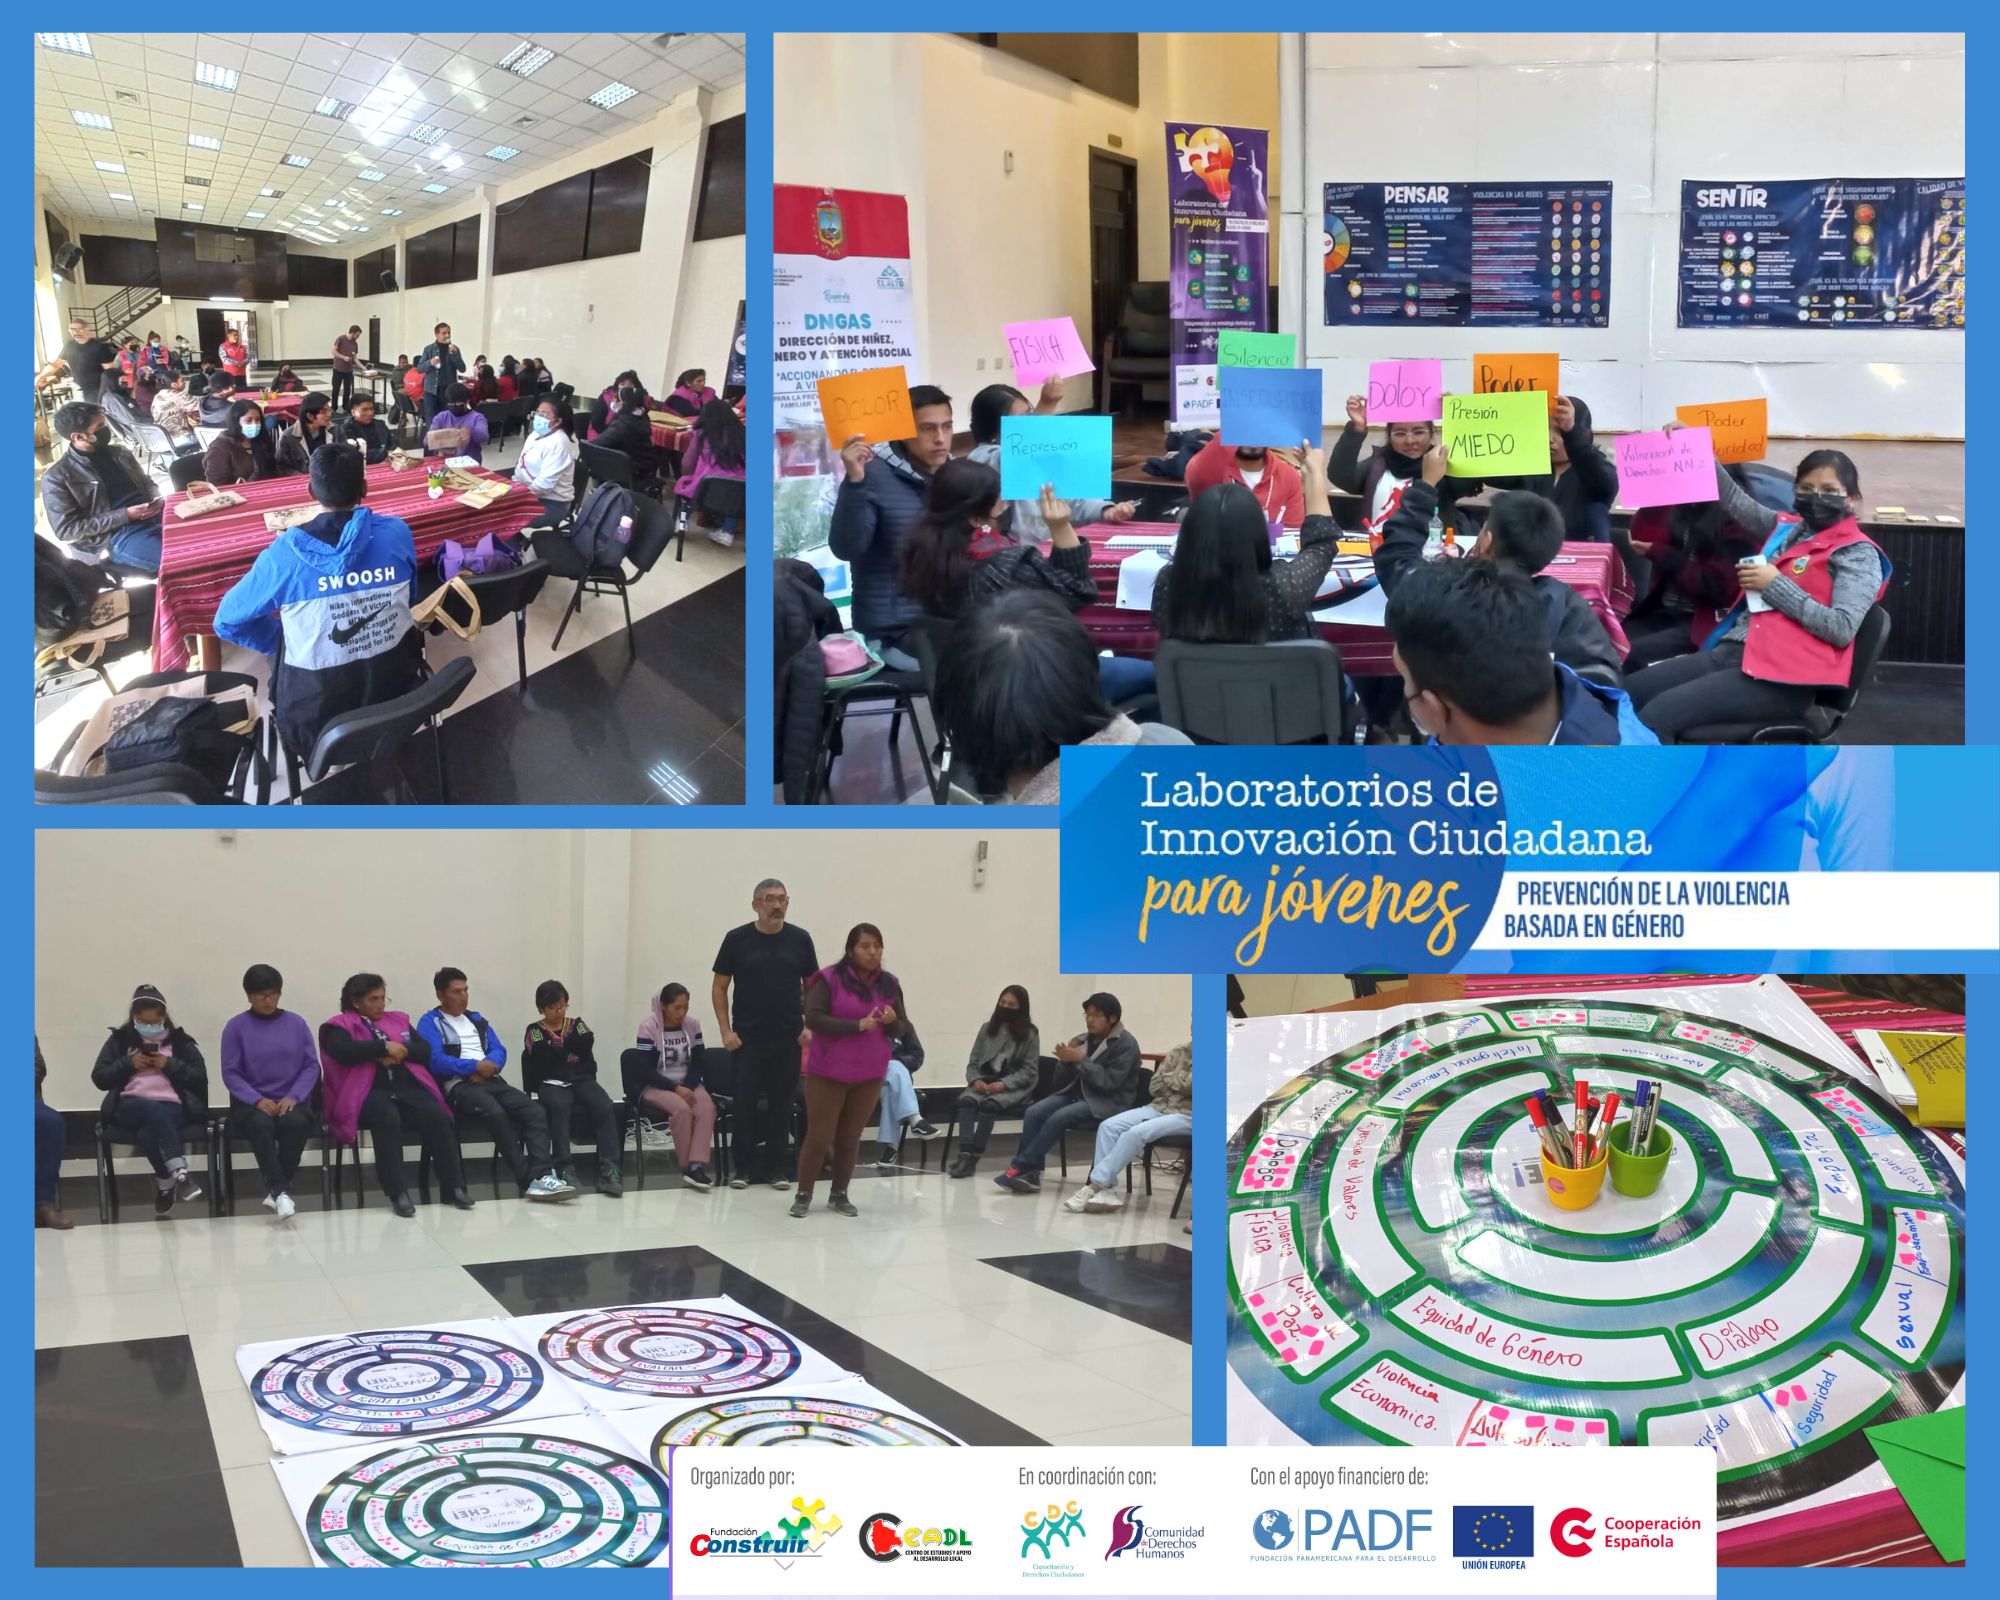 Laboratorio de Innovación Ciudadana para jóvenes para la prevención de la violencia basada en género en El Alto